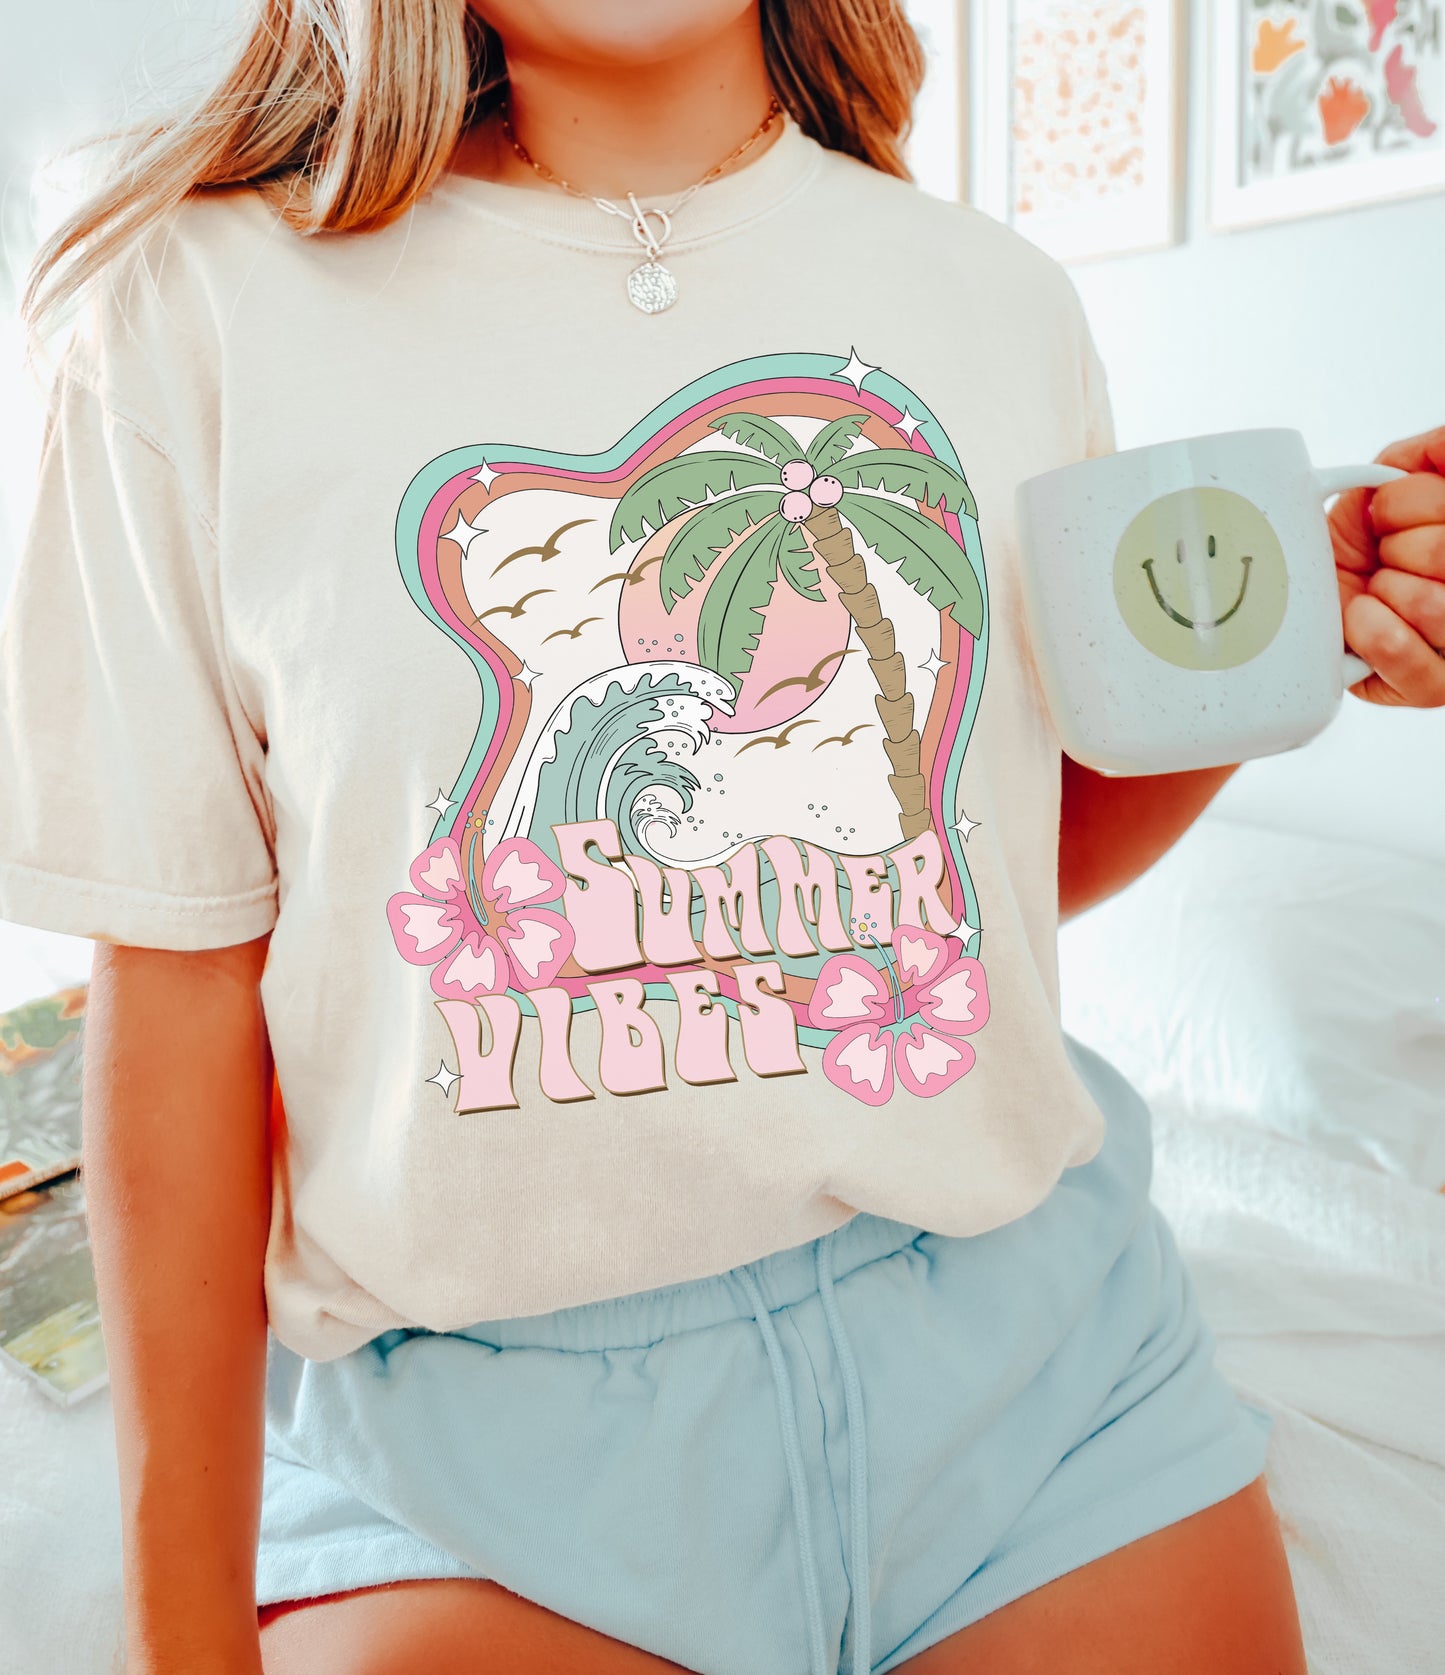 Summer Vibes Shirt